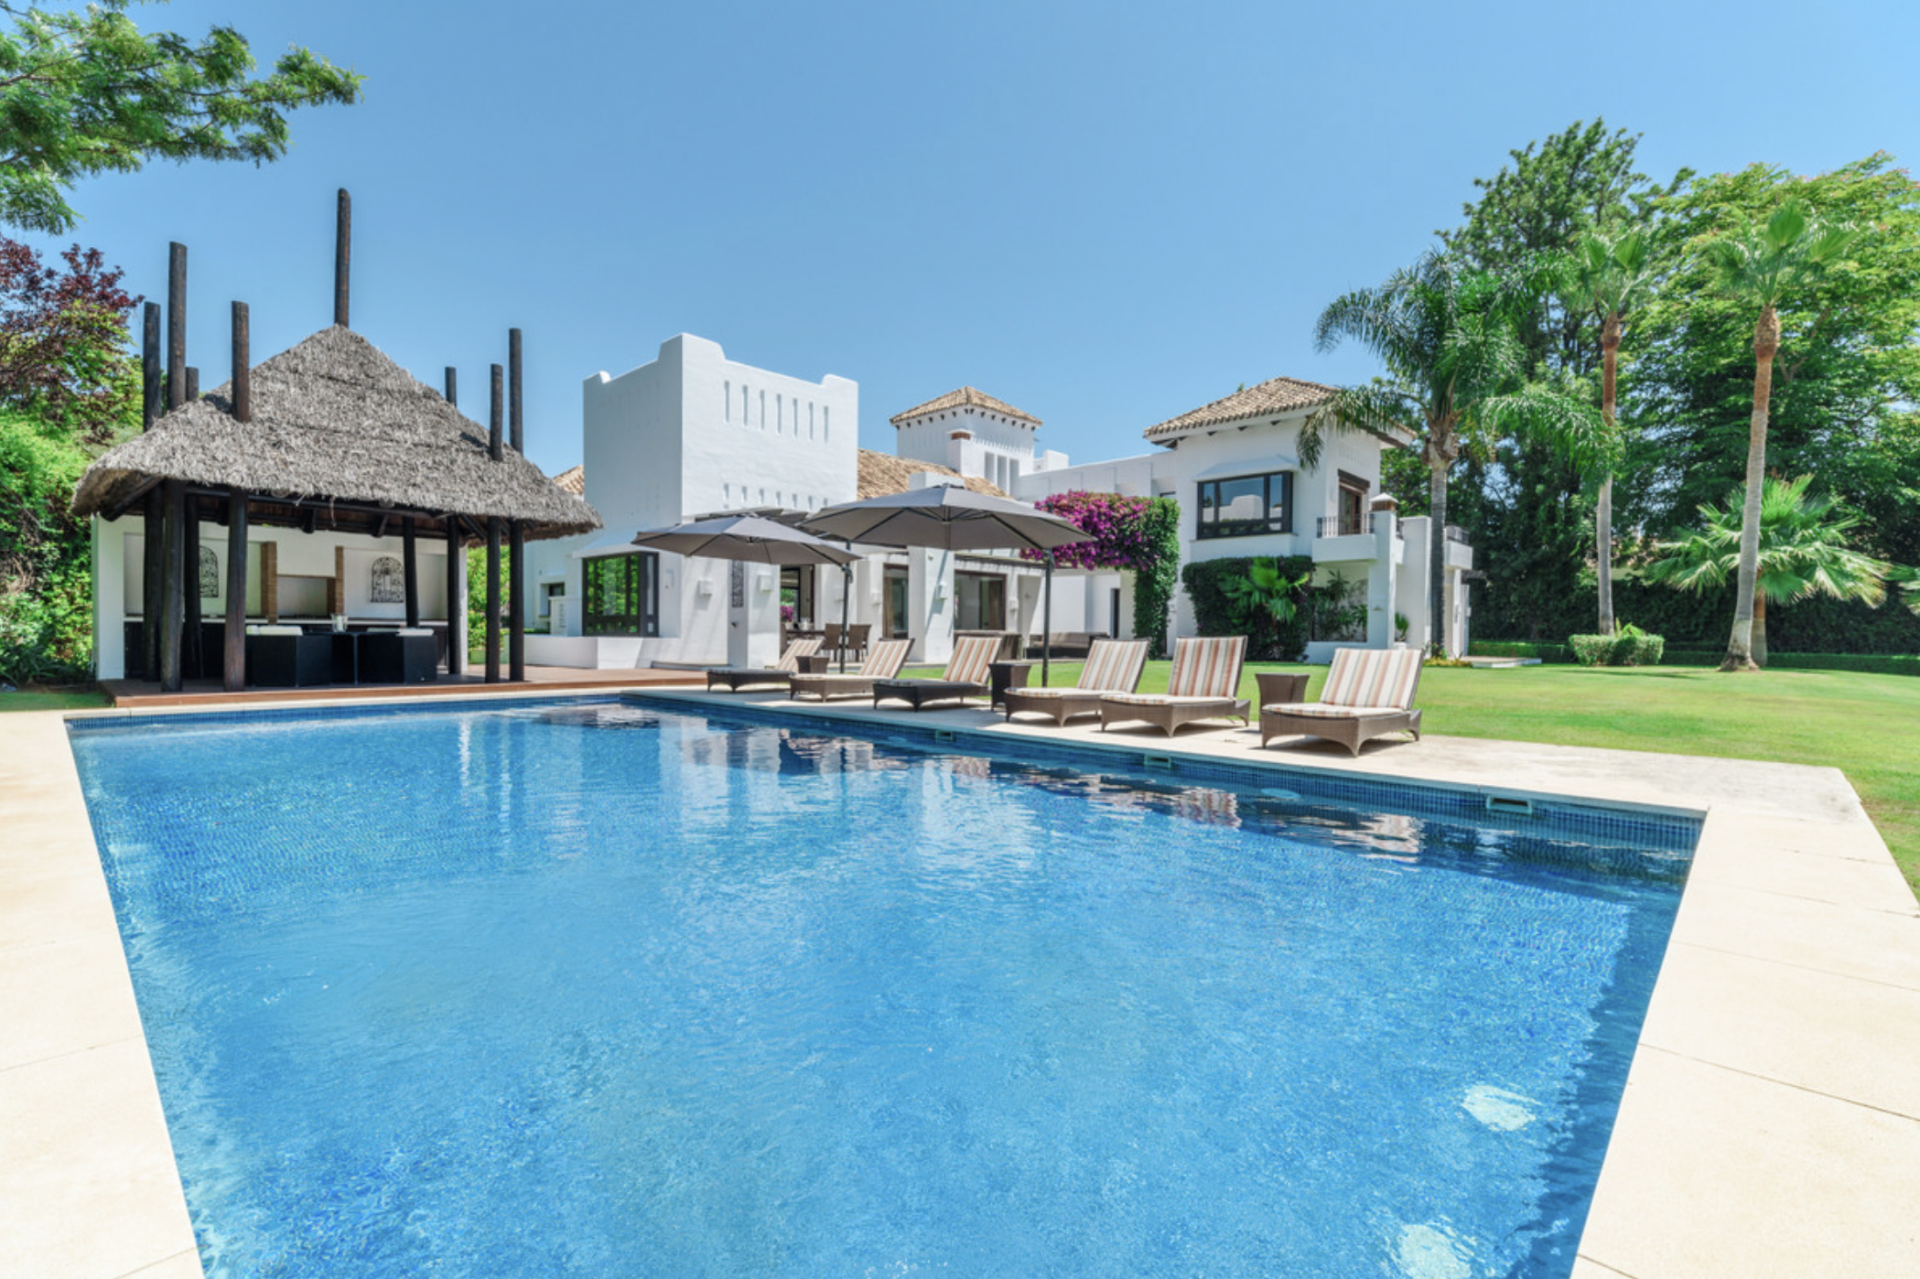 Espectacular y elegante villa en Guadalmina Baja a poca distancia de la playa, hotel de 5 estrellas, dos campos de golf de 18 hoyos y varios restaurantes de playa